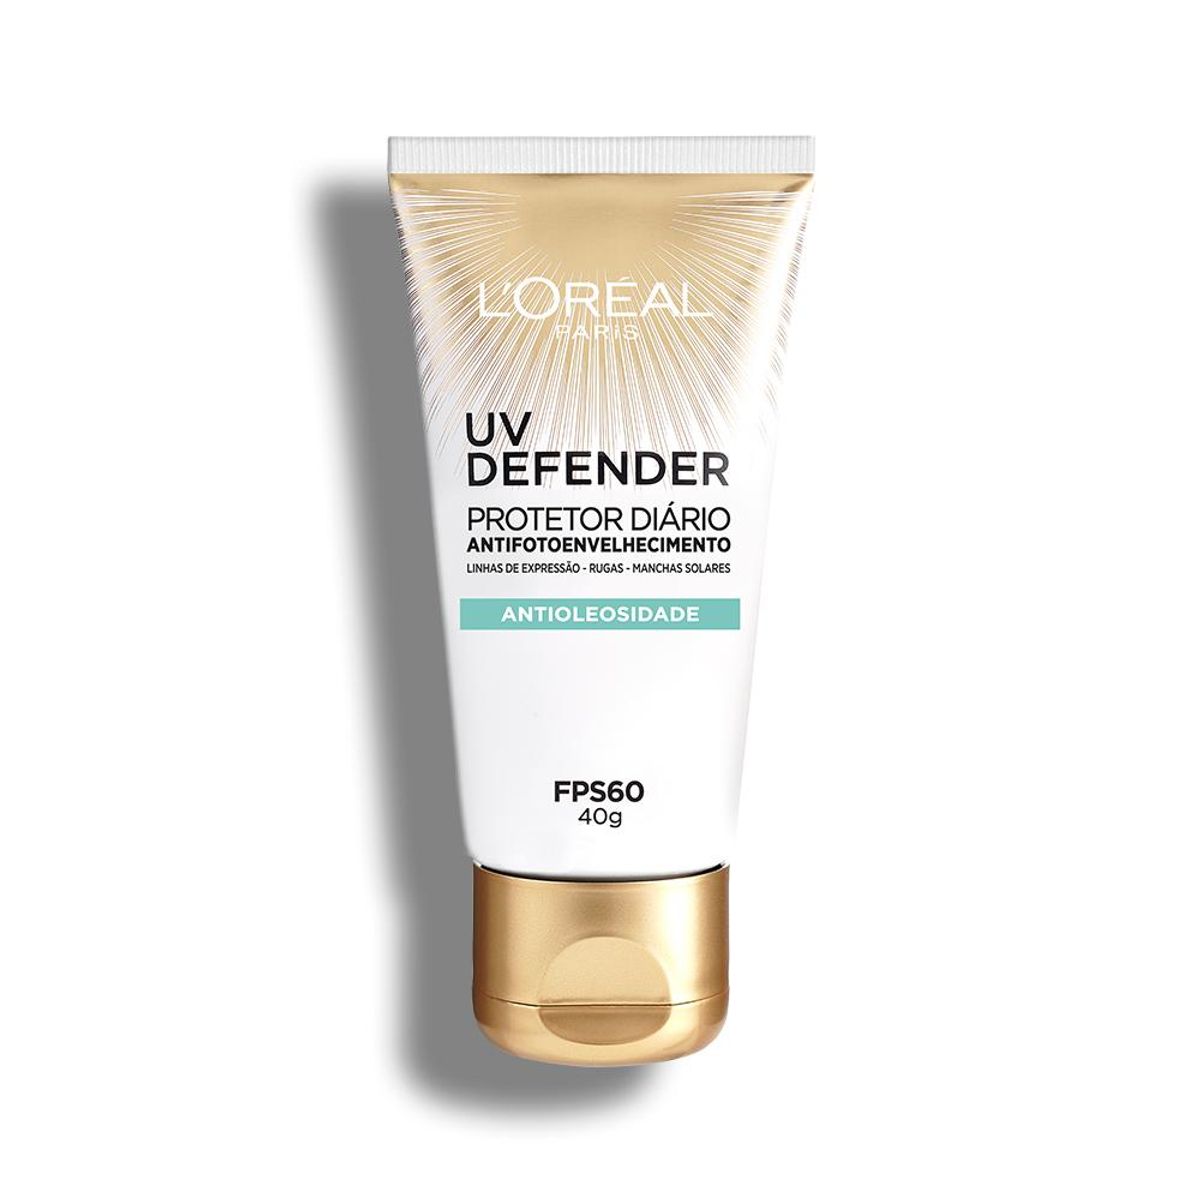 Protetor Solar Facial L'Oréal Paris UV Defender Antioleosidade FPS 60, 40g